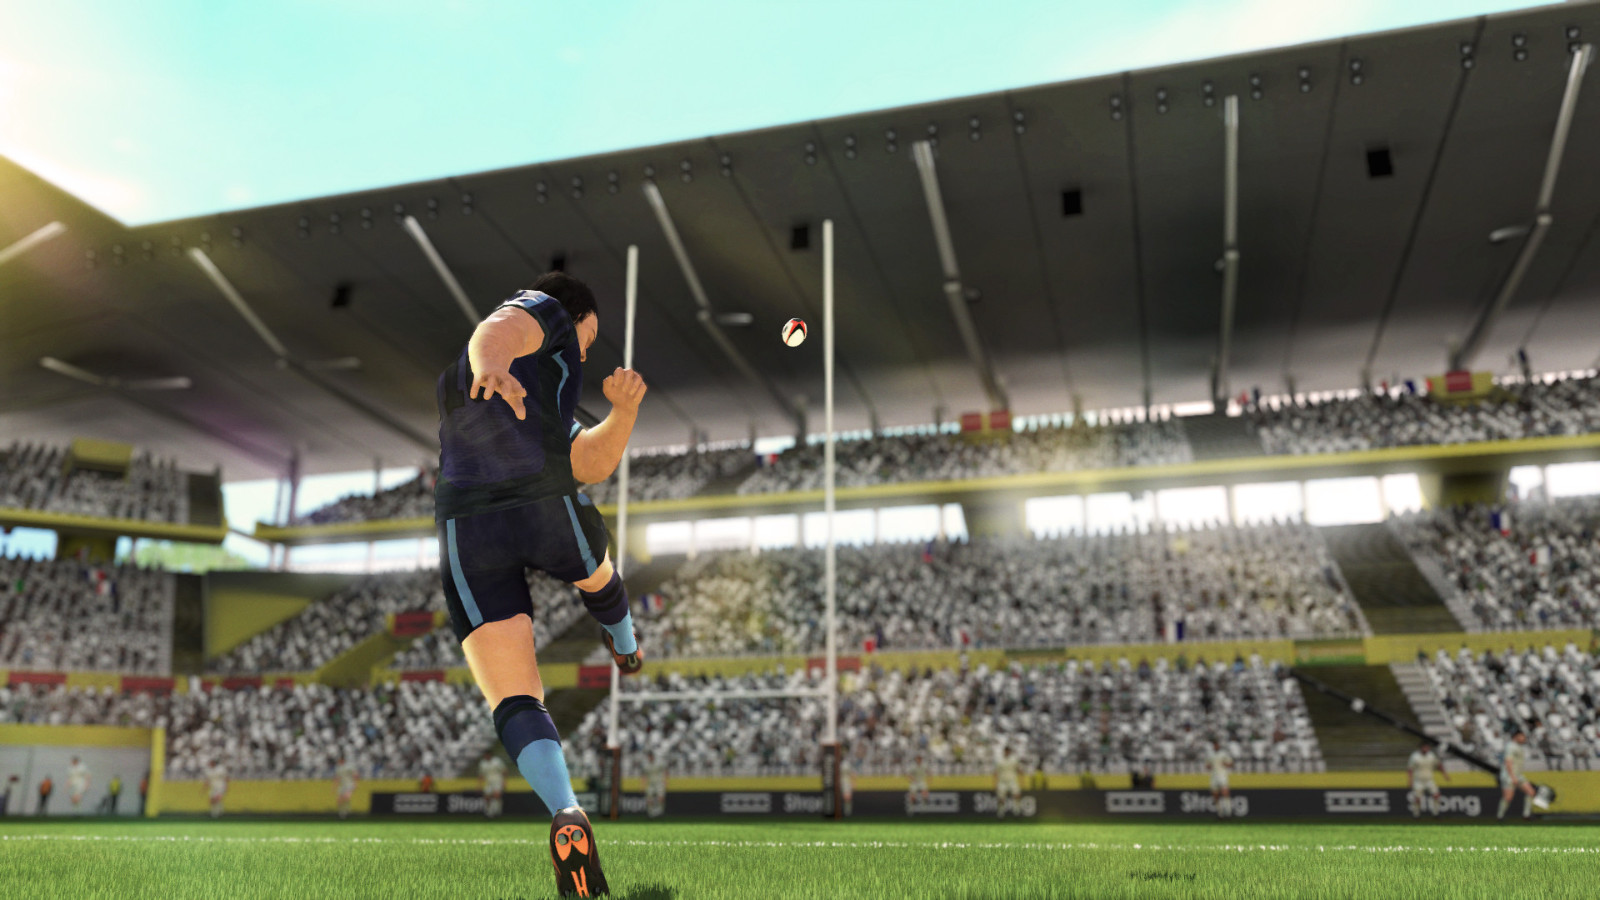 橄榄球模拟游戏《橄榄球22》现已上线Steam 暂不支持键鼠操作